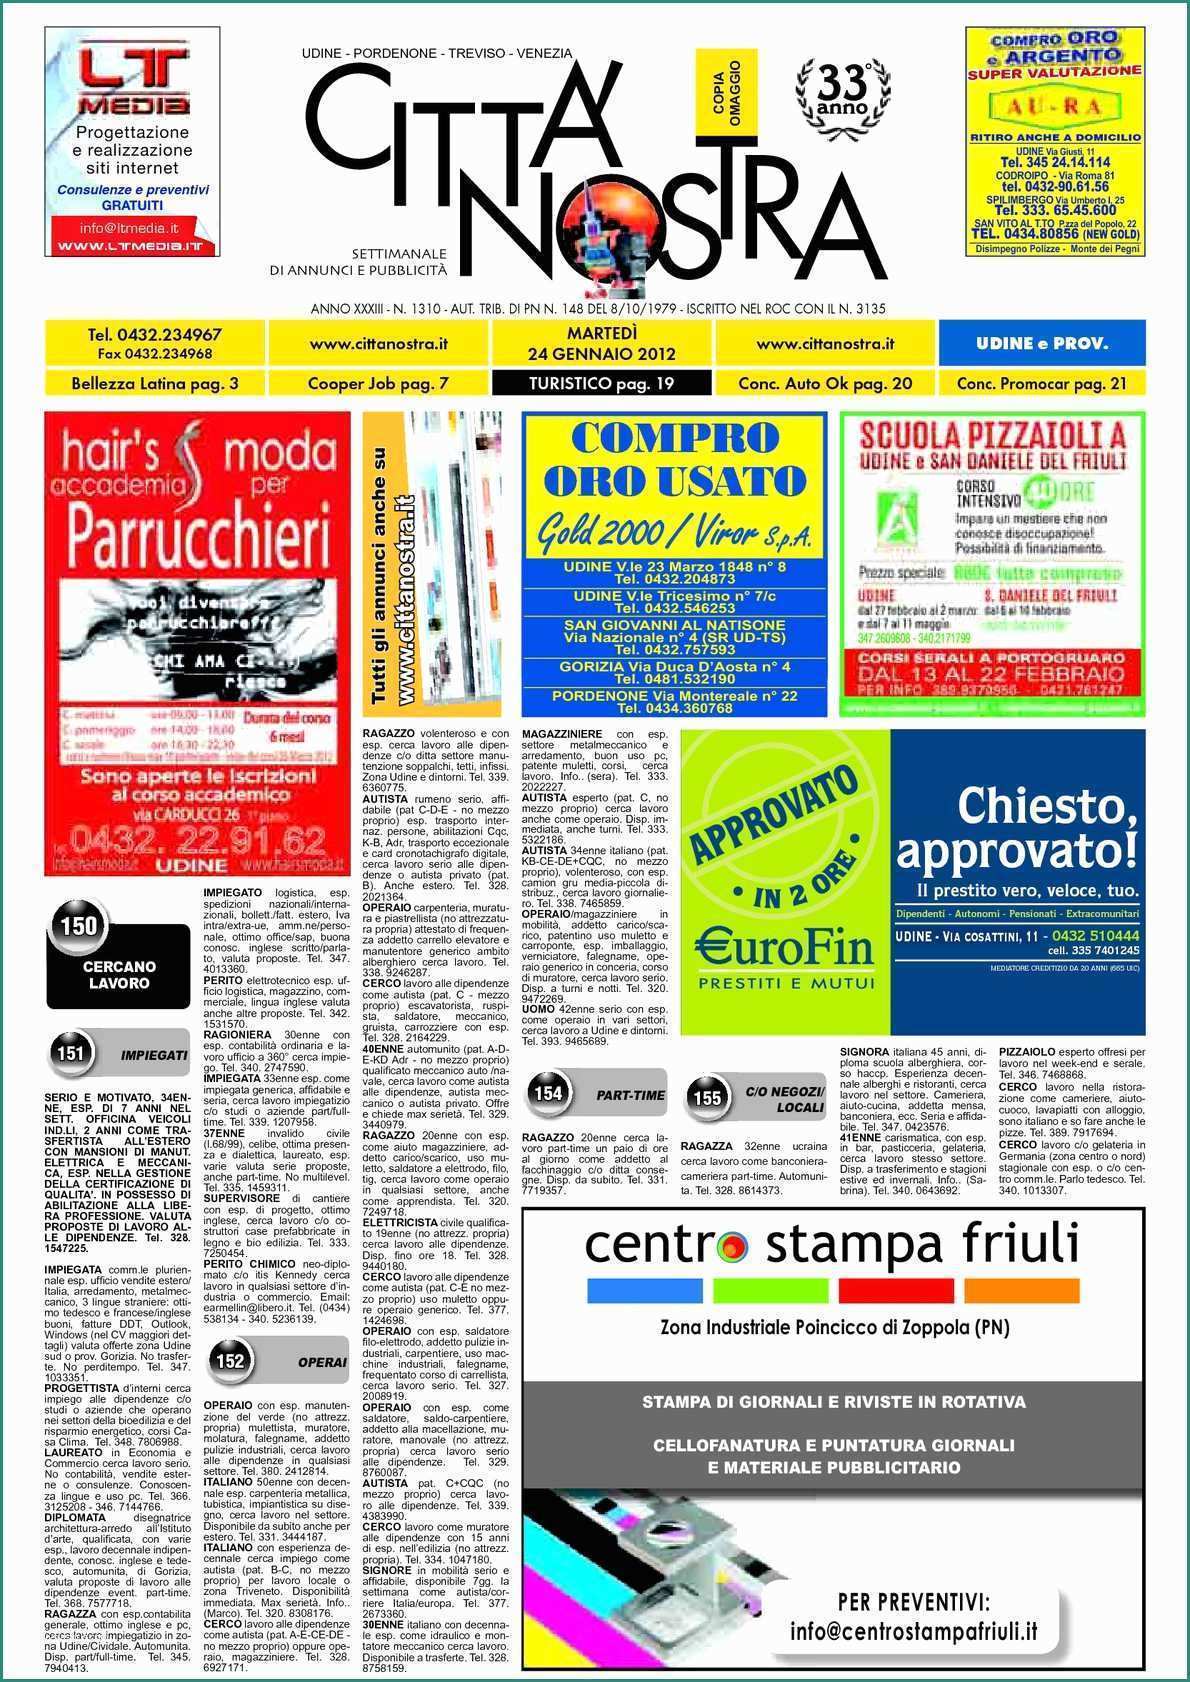 Lavatrice Indesit Non Parte E Calaméo Citt  Nostra Udine Del 24 01 2012 N 1310